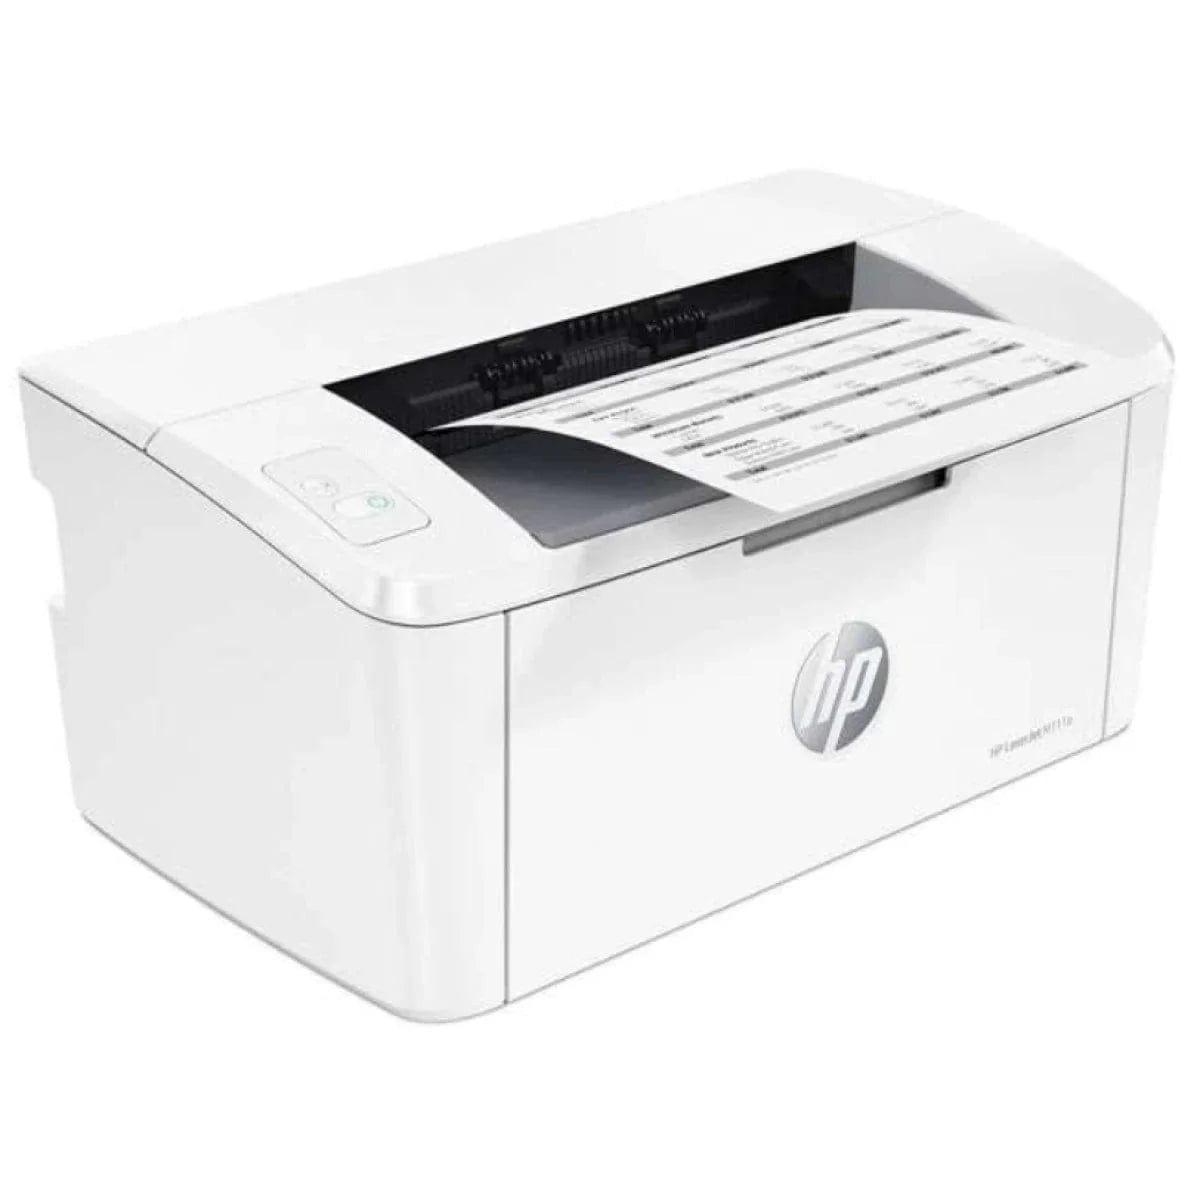 HP Printers HP LaserJet M111a MONO Laser Printer 20ppm 600dpi A4 USB Interface - White